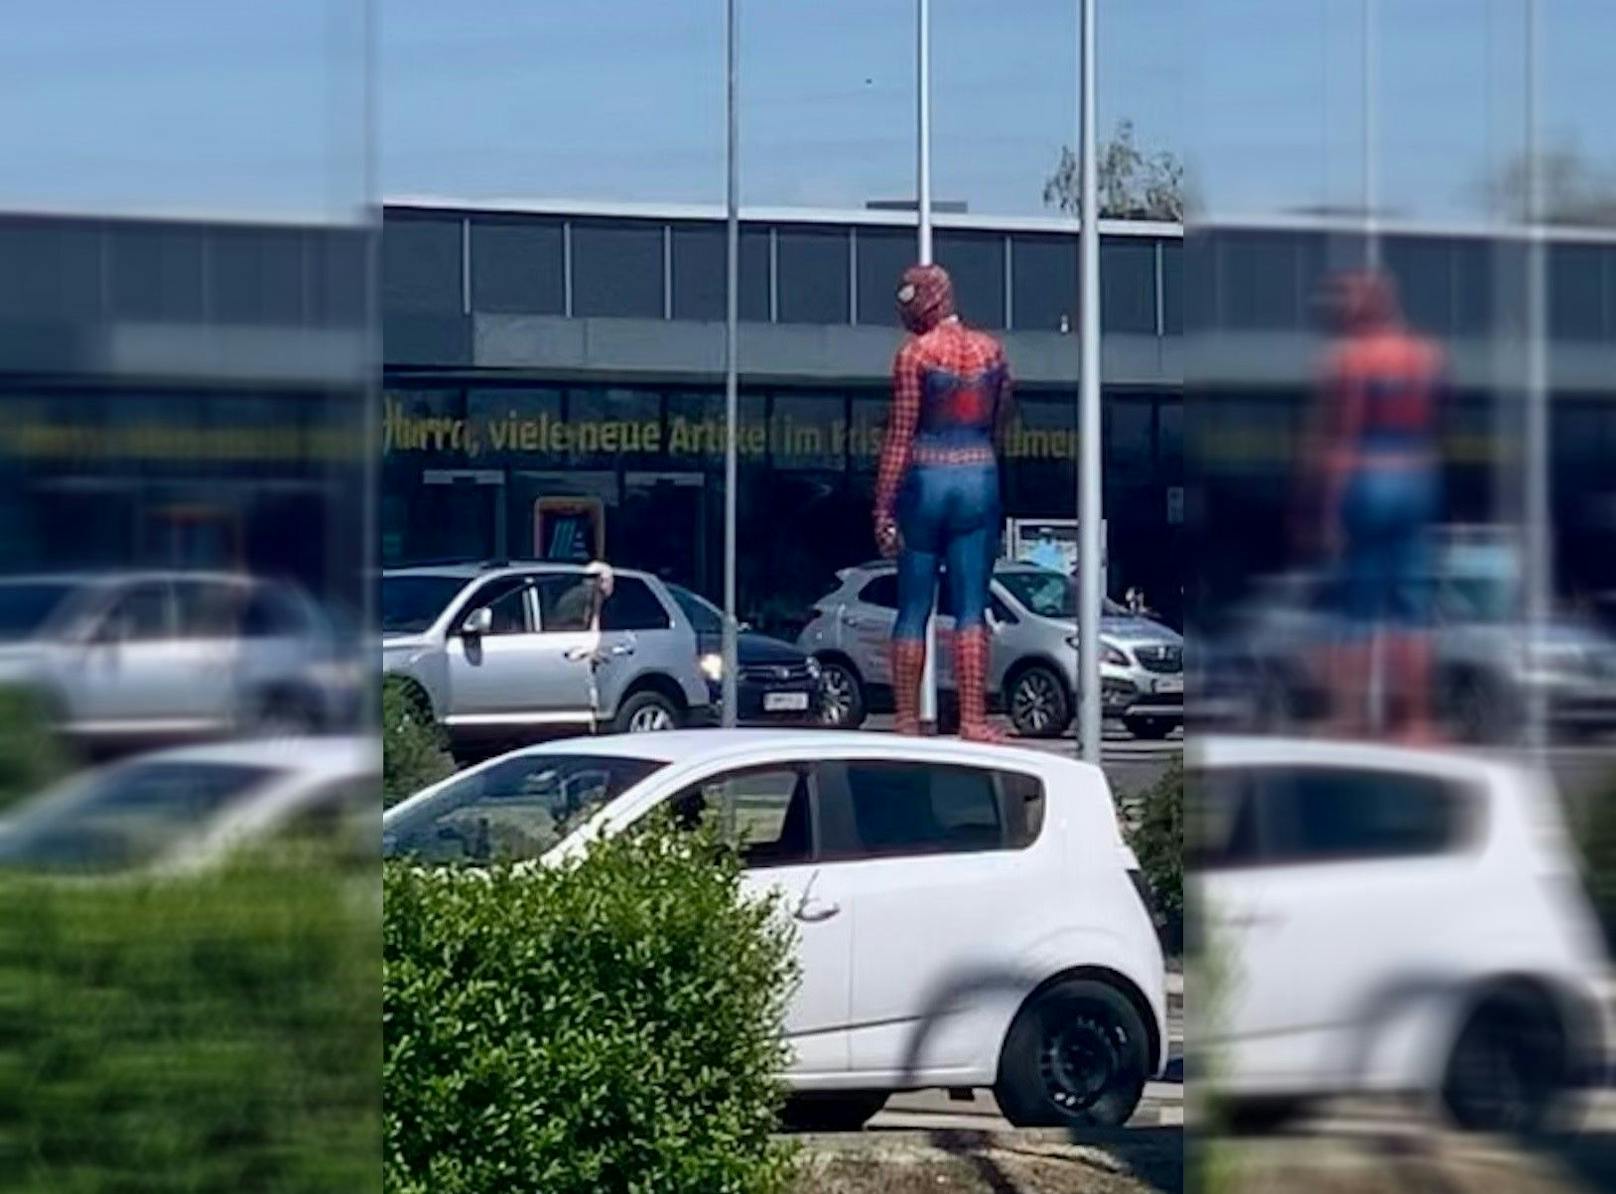 Ordnungshüter? Spiderman auf Autodach sorgt für Lacher